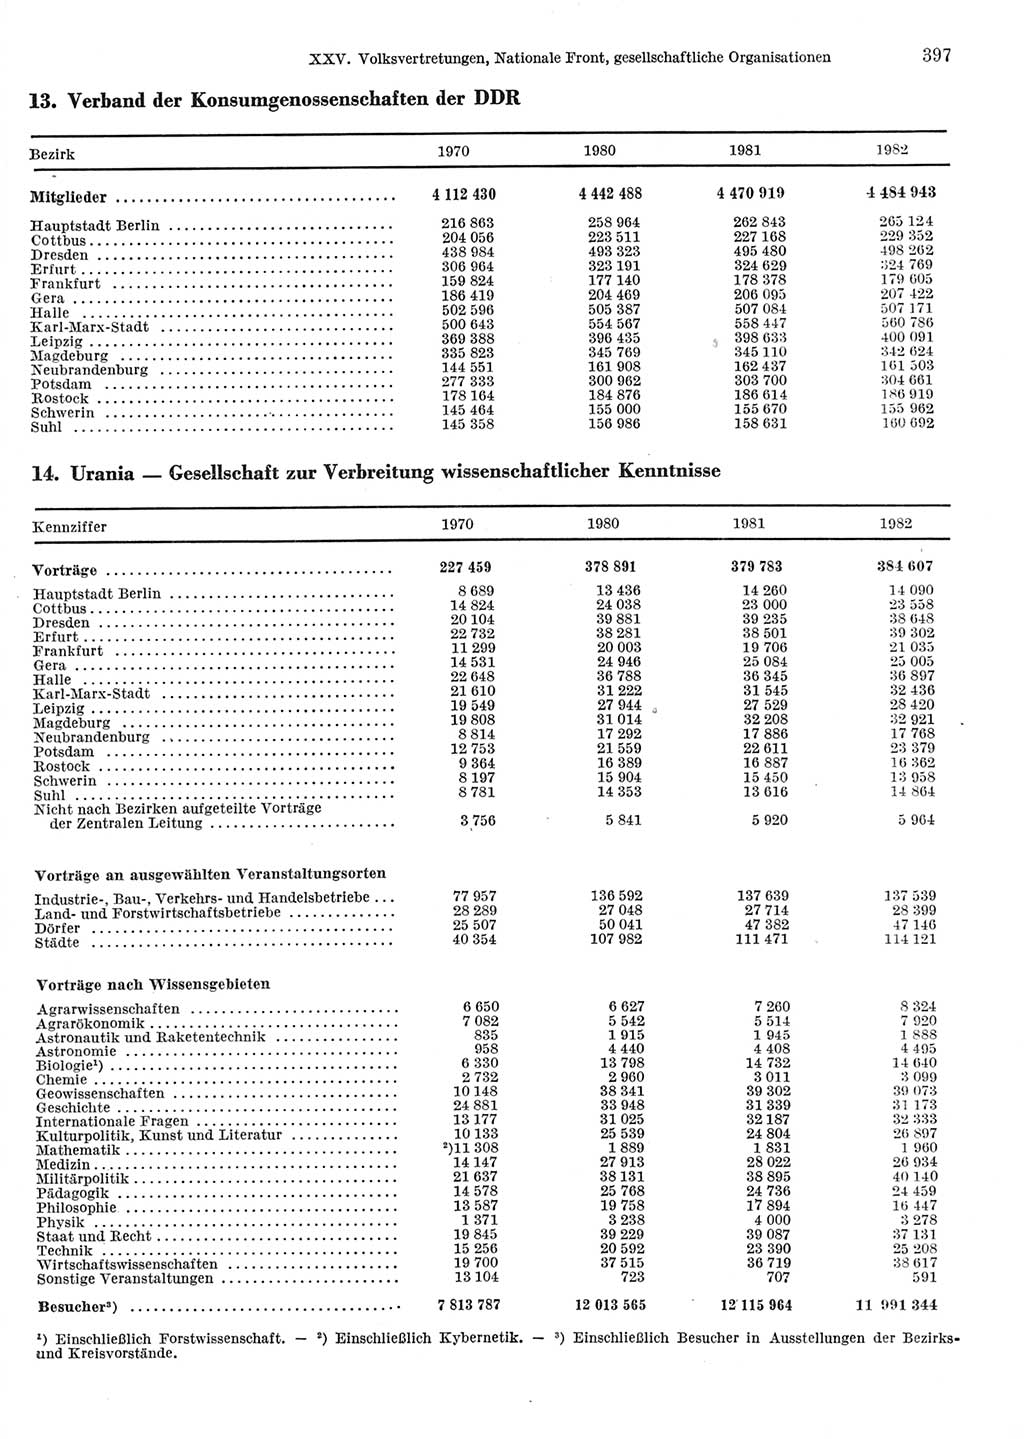 Statistisches Jahrbuch der Deutschen Demokratischen Republik (DDR) 1983, Seite 397 (Stat. Jb. DDR 1983, S. 397)